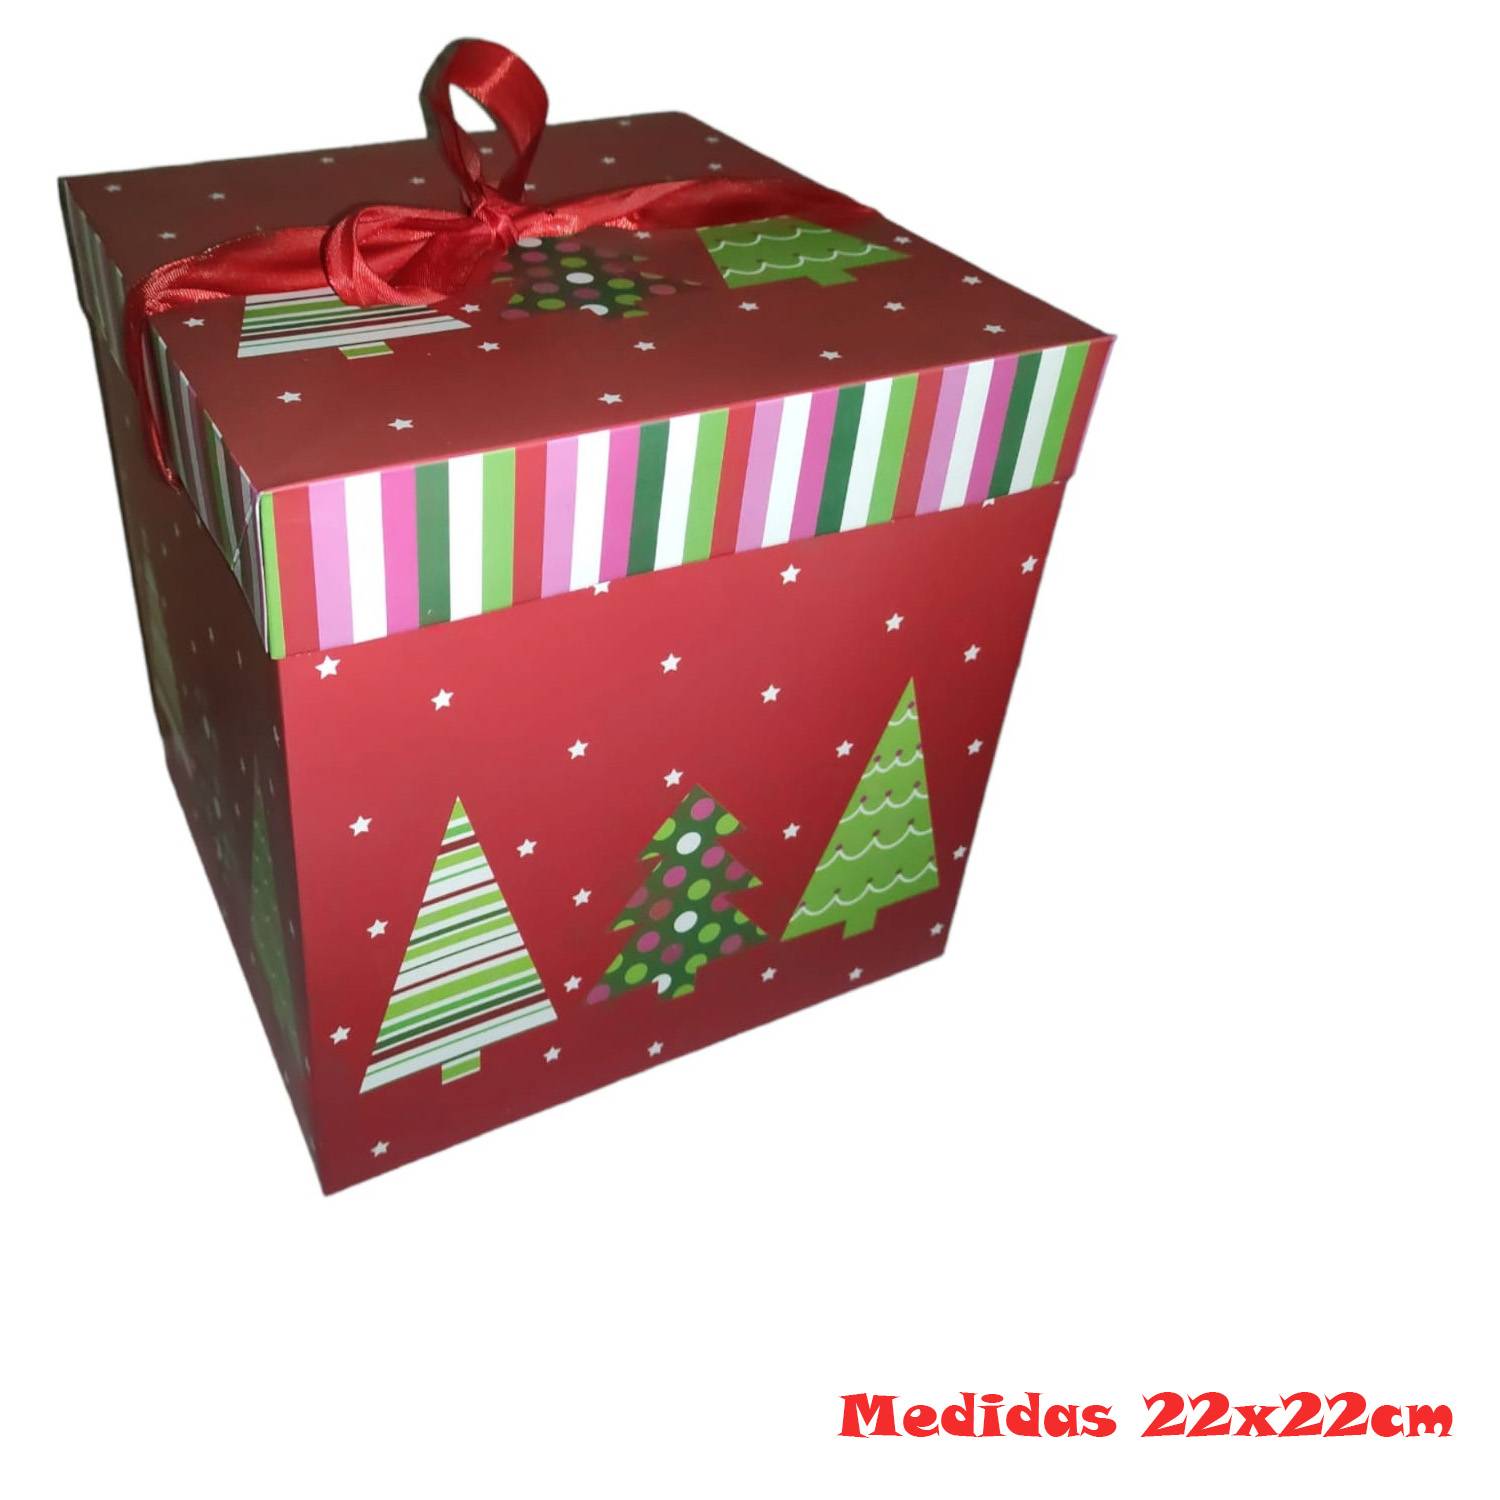 GENERICO Caja De Regalo Con Diseño De Navidad Regalos Mediana 22 Cm